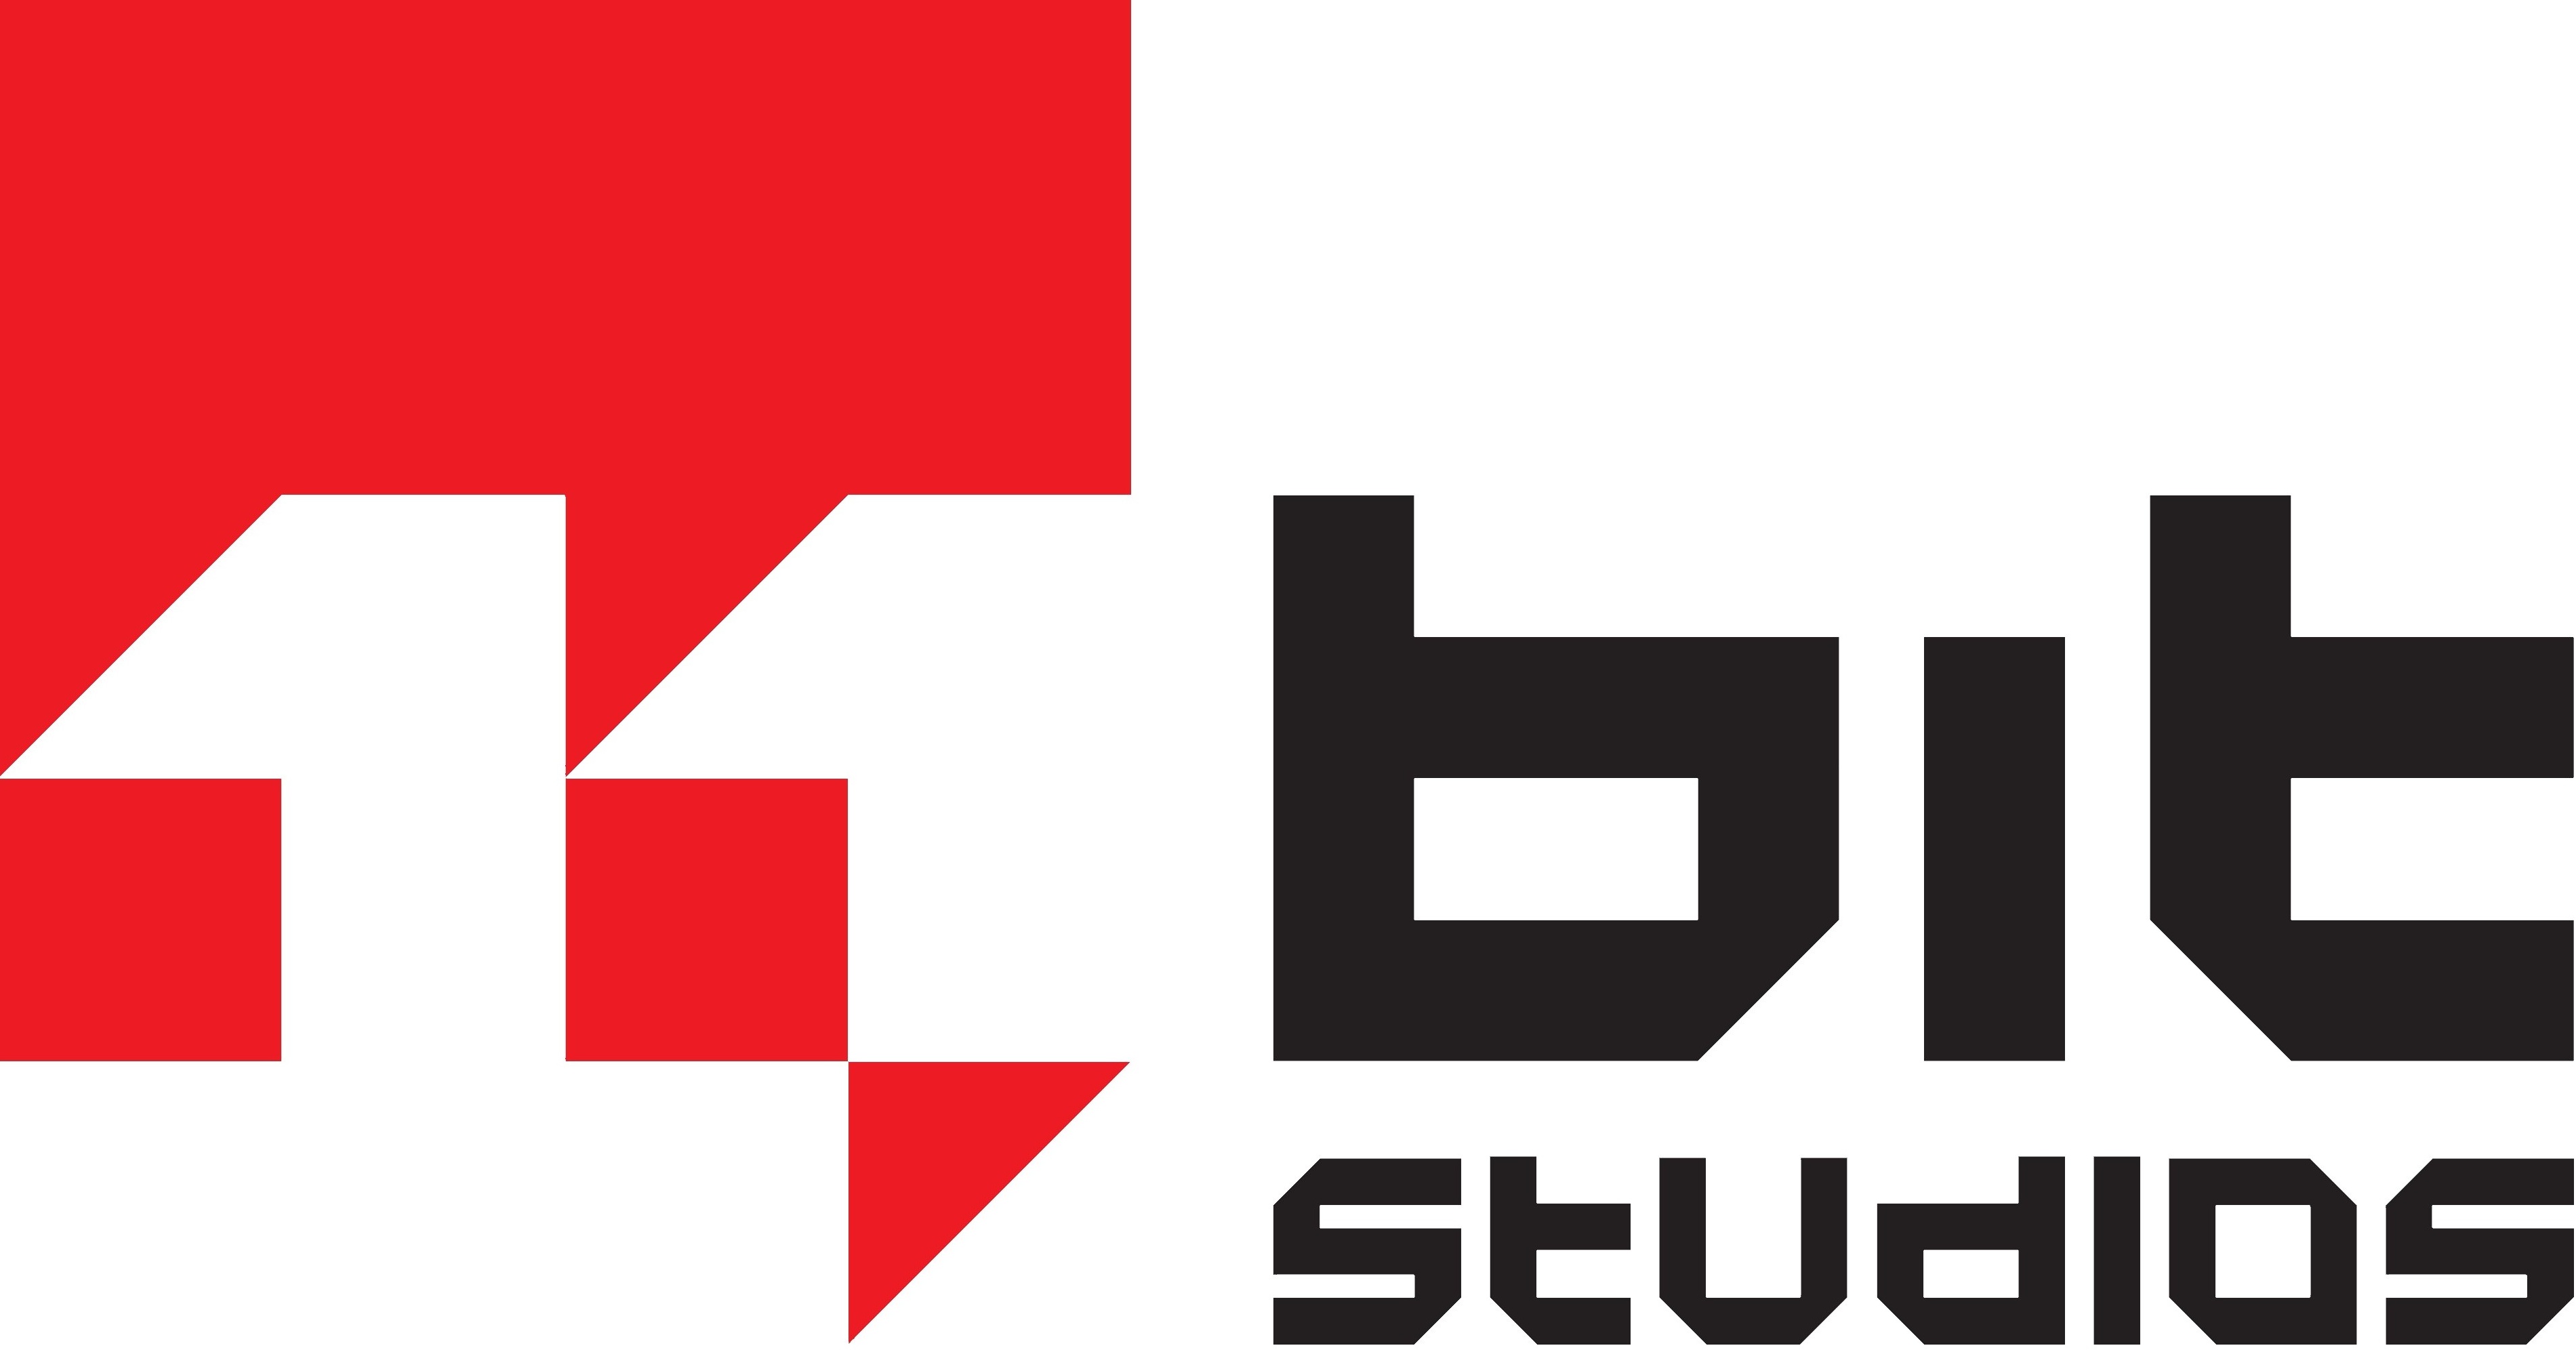 Raport kwartalny 11 bit studios za I-III kwartał 2022 roku | StrefaInwestorow.pl